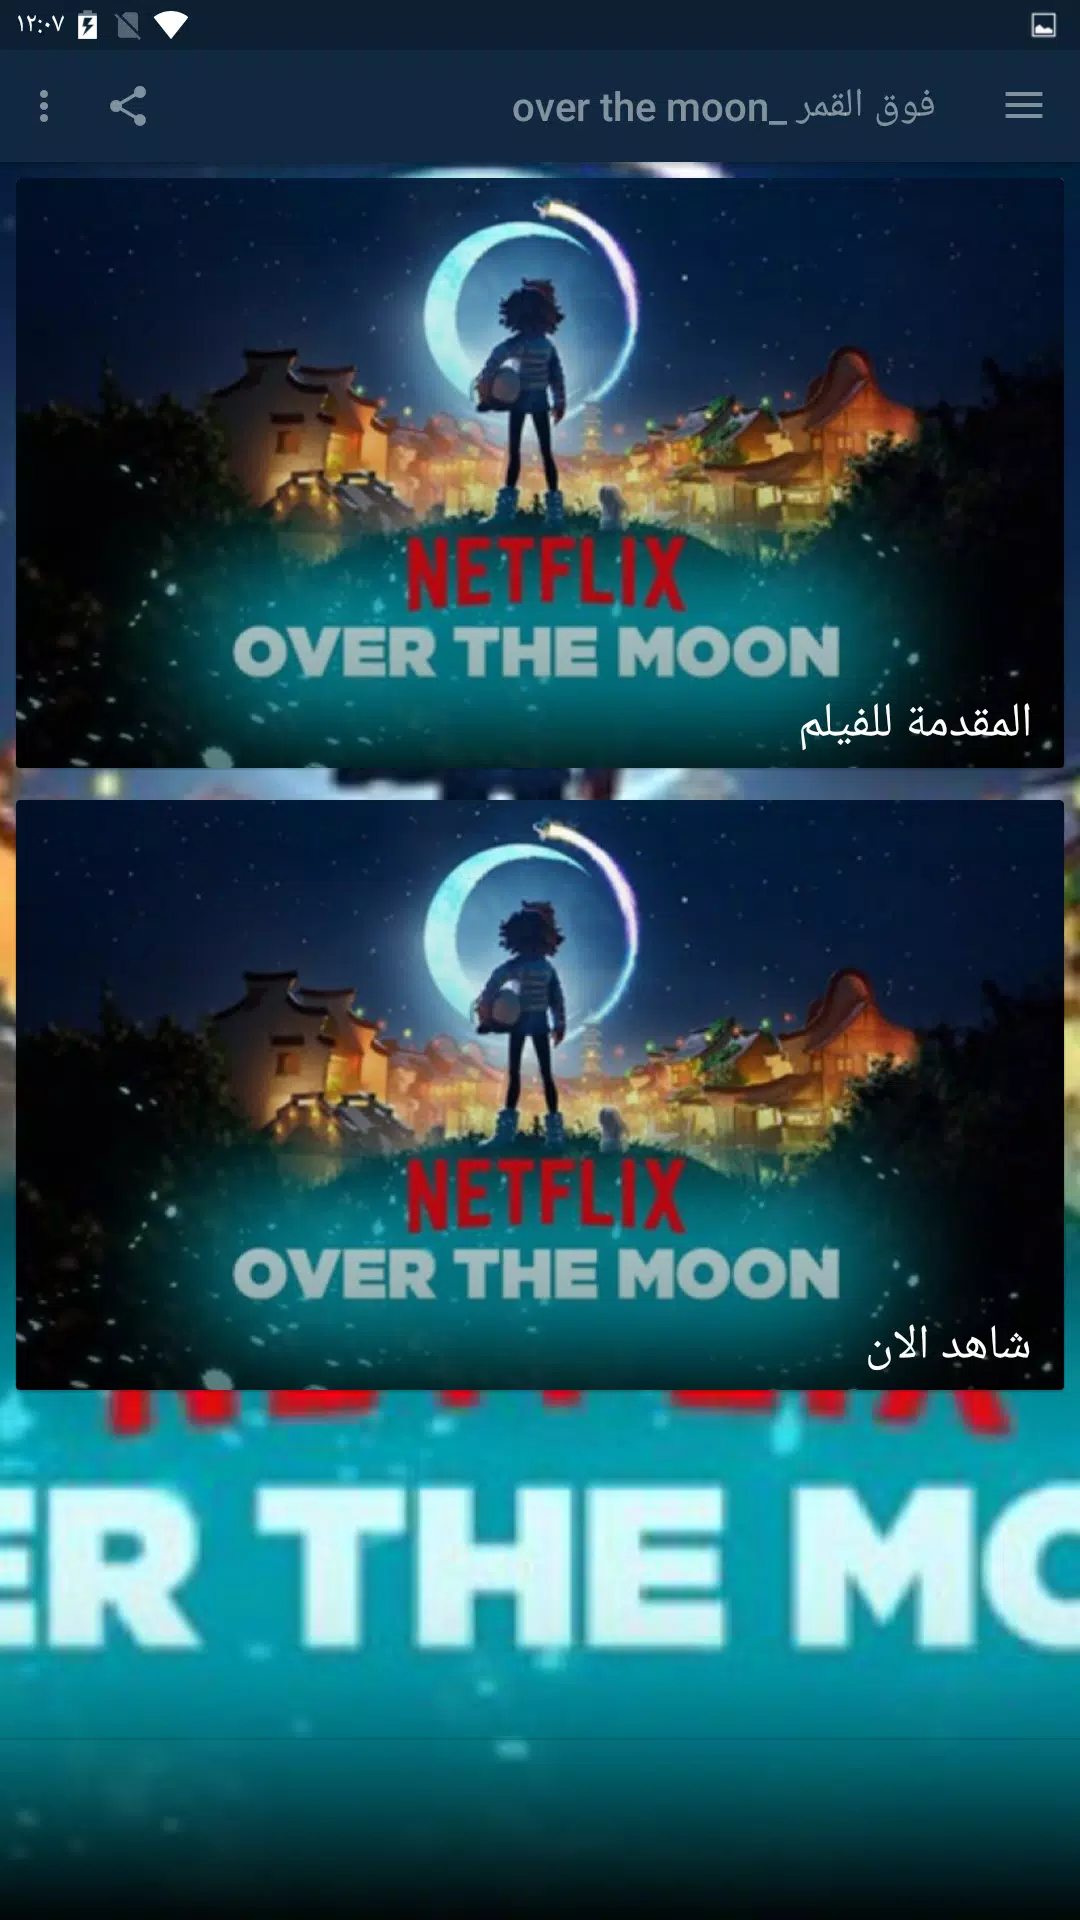 فيلم الانيمي فوق القمر _ 2020over the moon APK voor Android Download